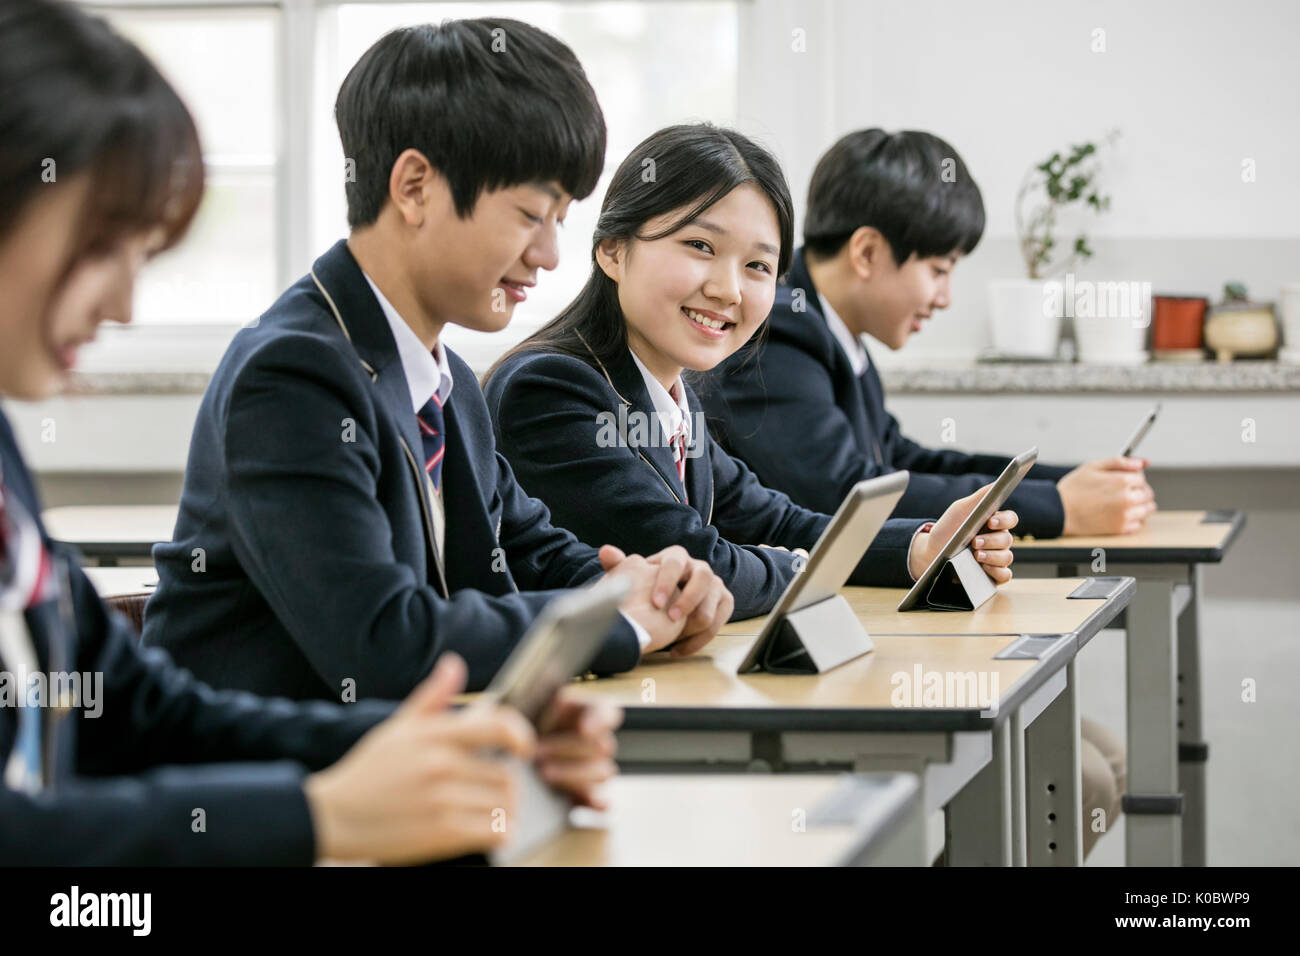 Smiling school girl et ses camarades avec tablettes électriques Banque D'Images